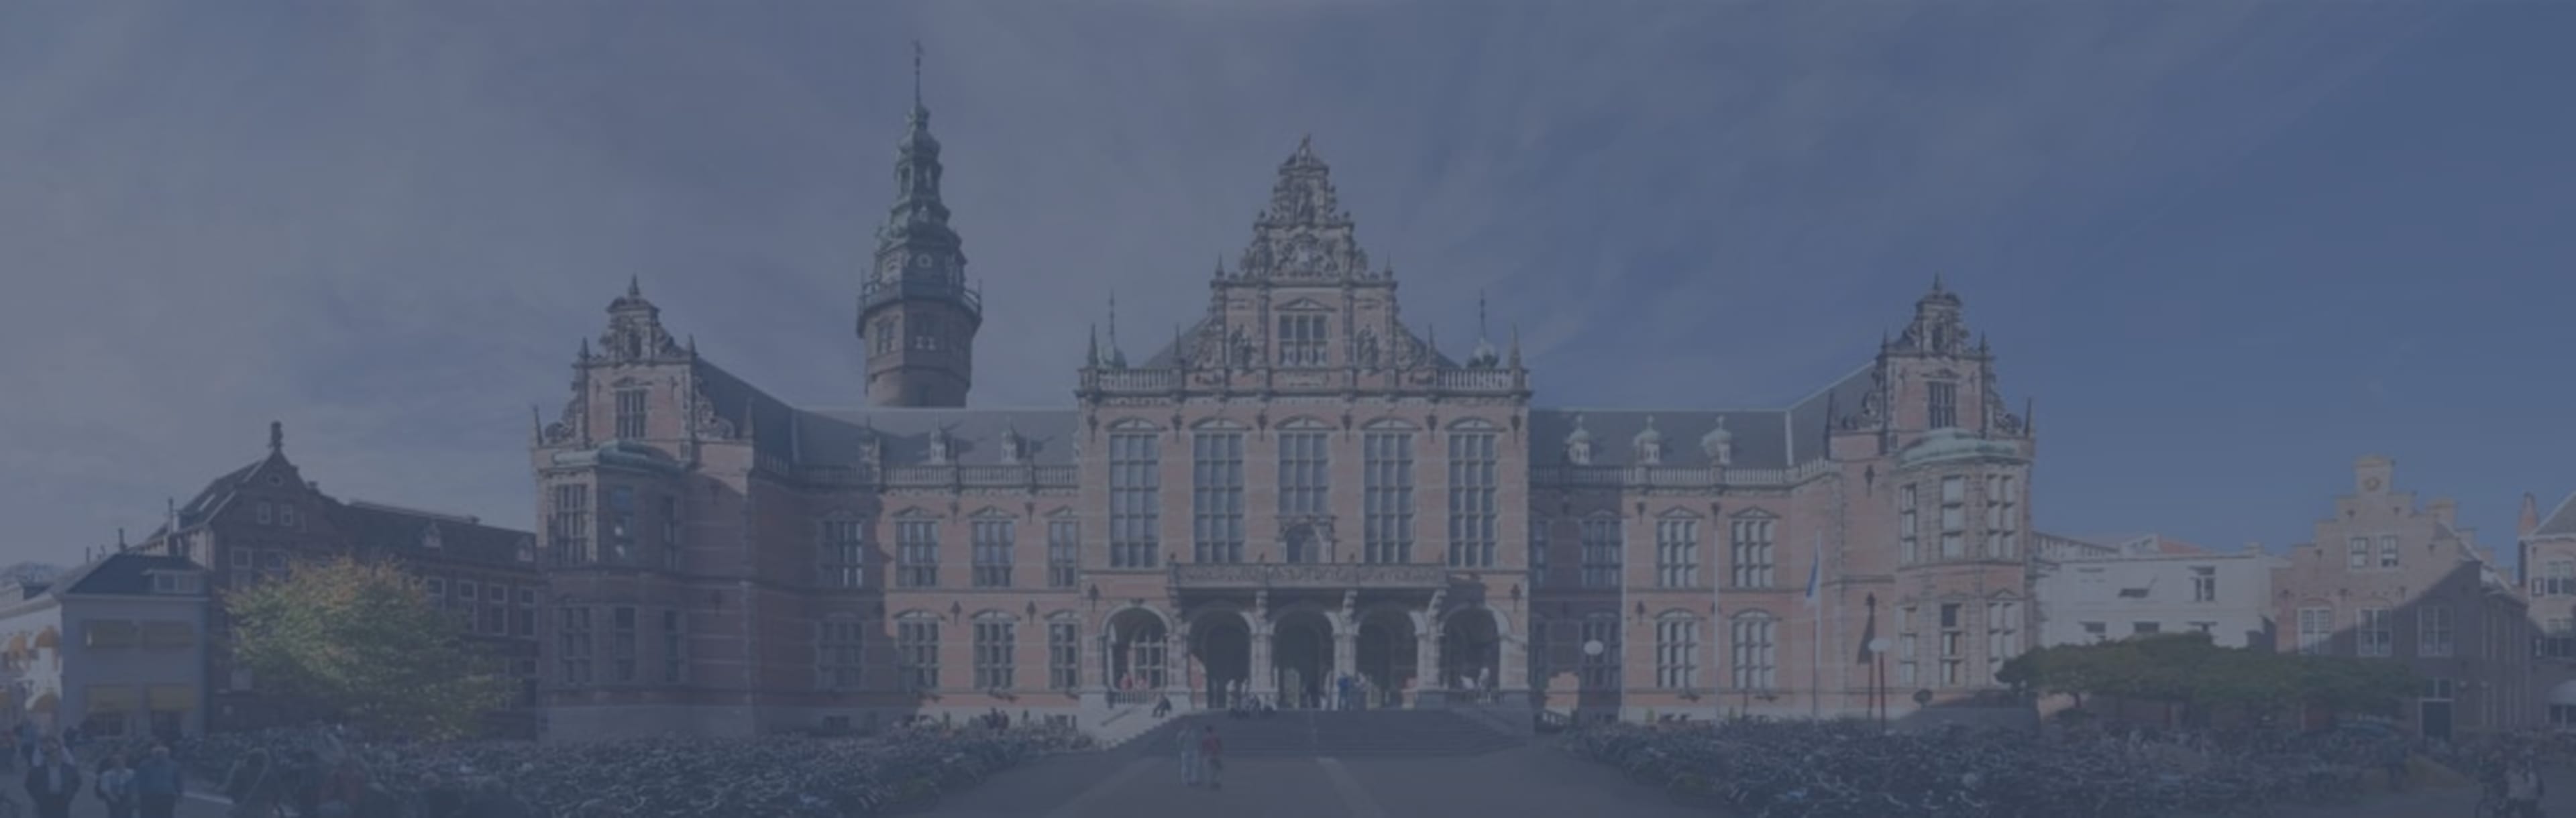 University of Groningen Undang-undang dan Inovasi Teknologi LLM